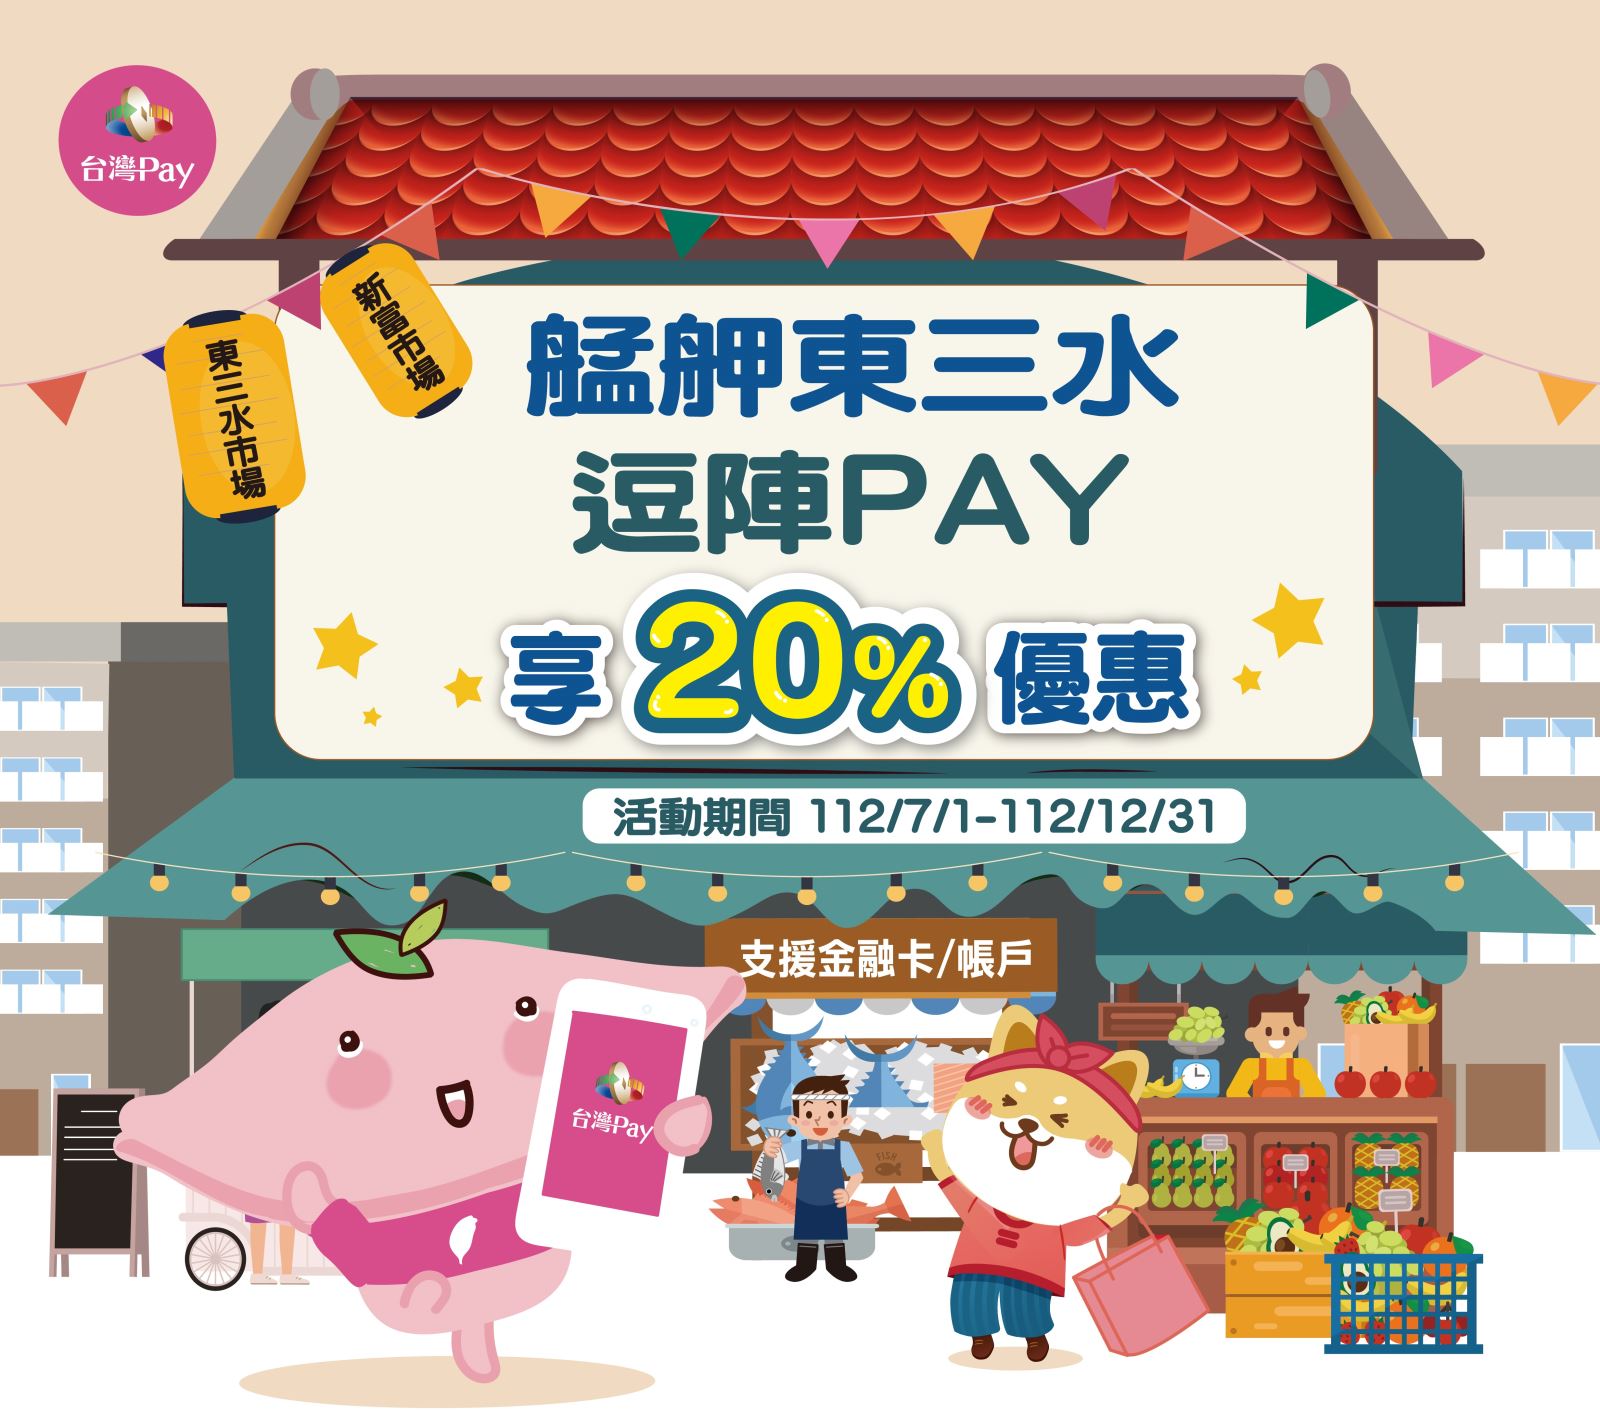 艋舺東三水 逗陣PAY 享20%優惠，使用「台灣Pay」QR Code掃碼支付成功者，單筆消費不限金額可享20%之現金回饋